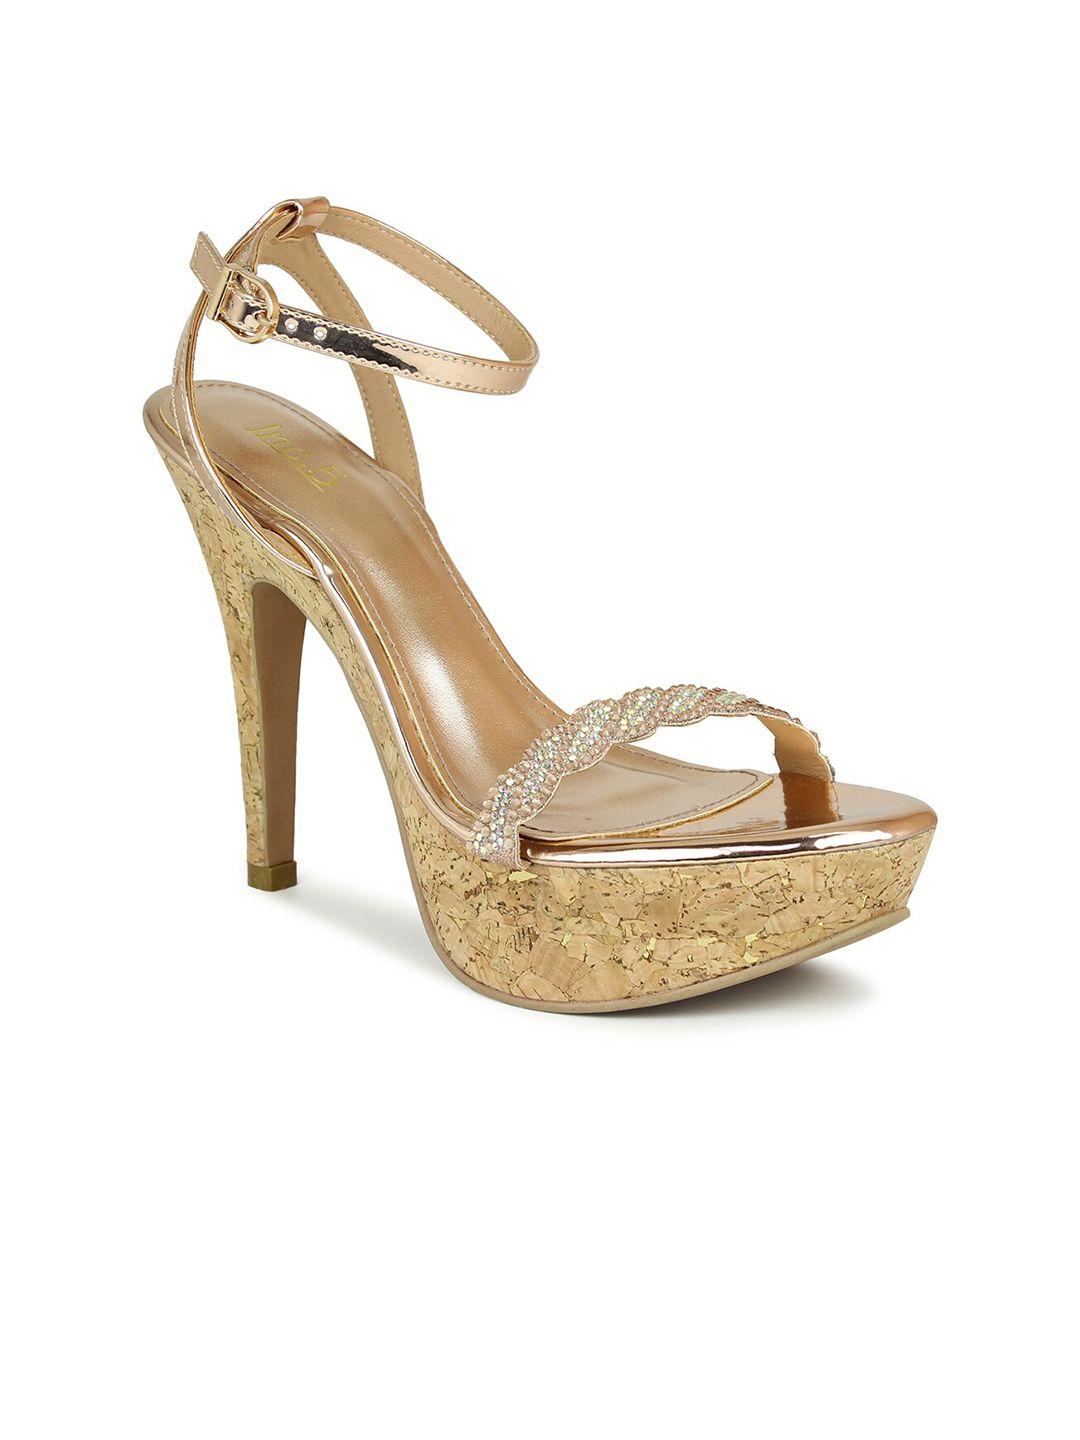 inc-5-women-copper-toned-&-gold-toned-comfort-sandals